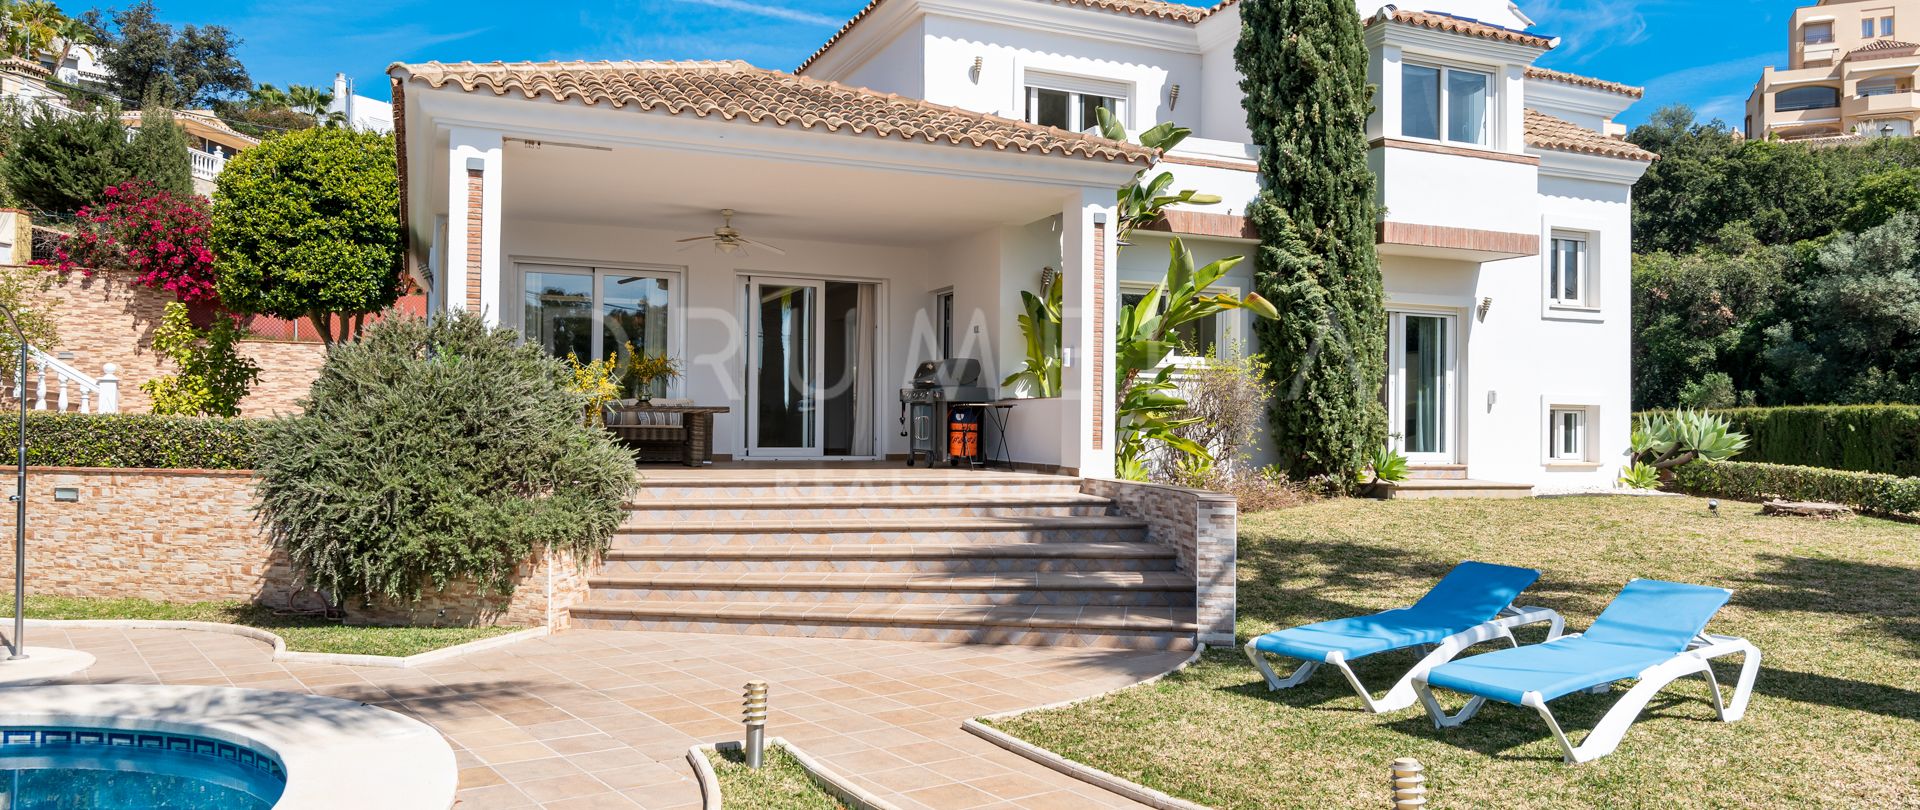 Villa for salg i Elviria, Marbella Øst